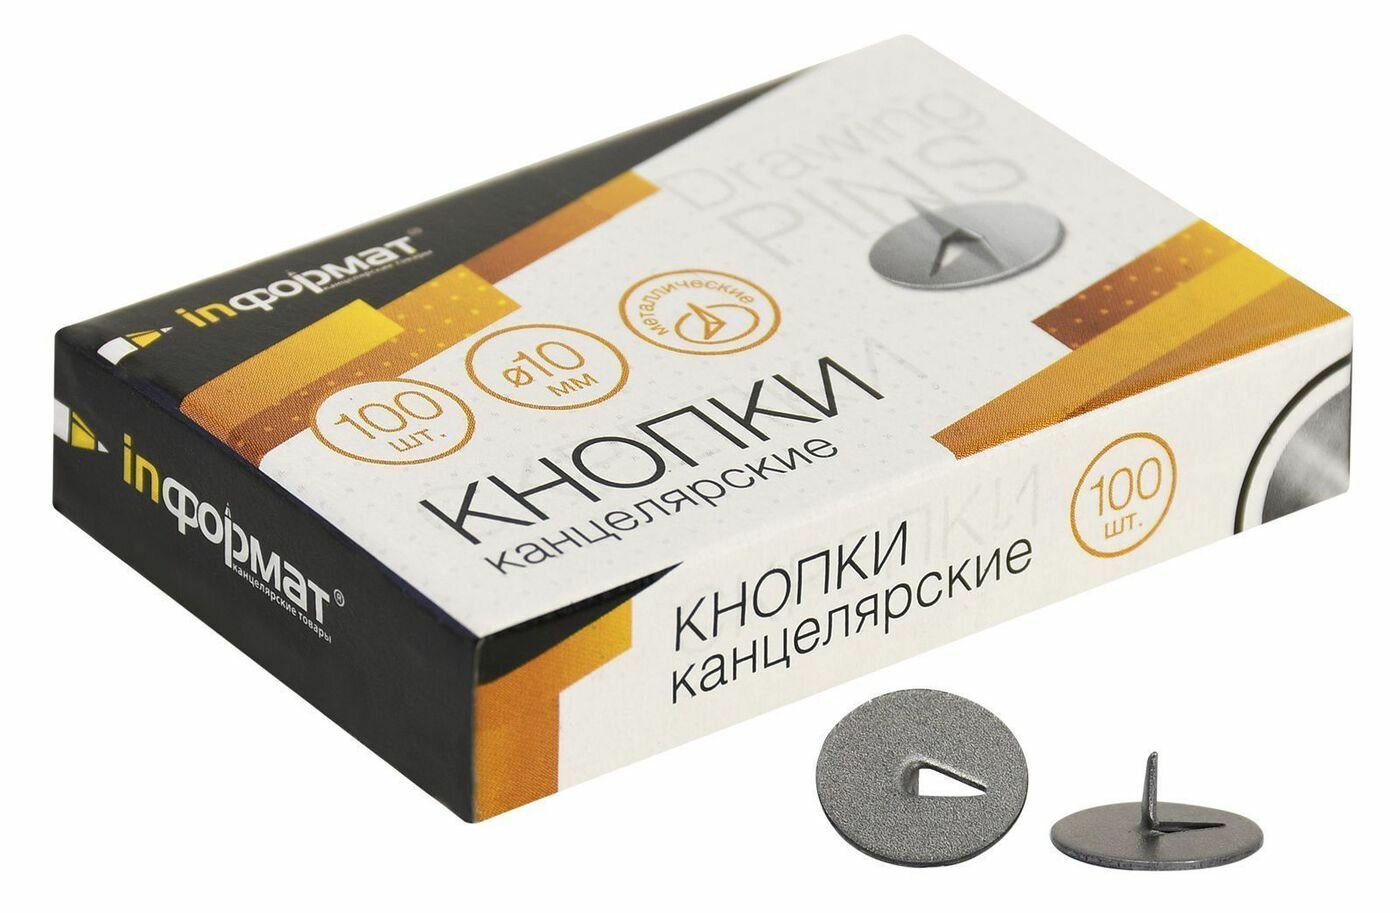 Кнопки канцелярские INFORMAT 10 мм, 100 шт, классические без покрытия металлические